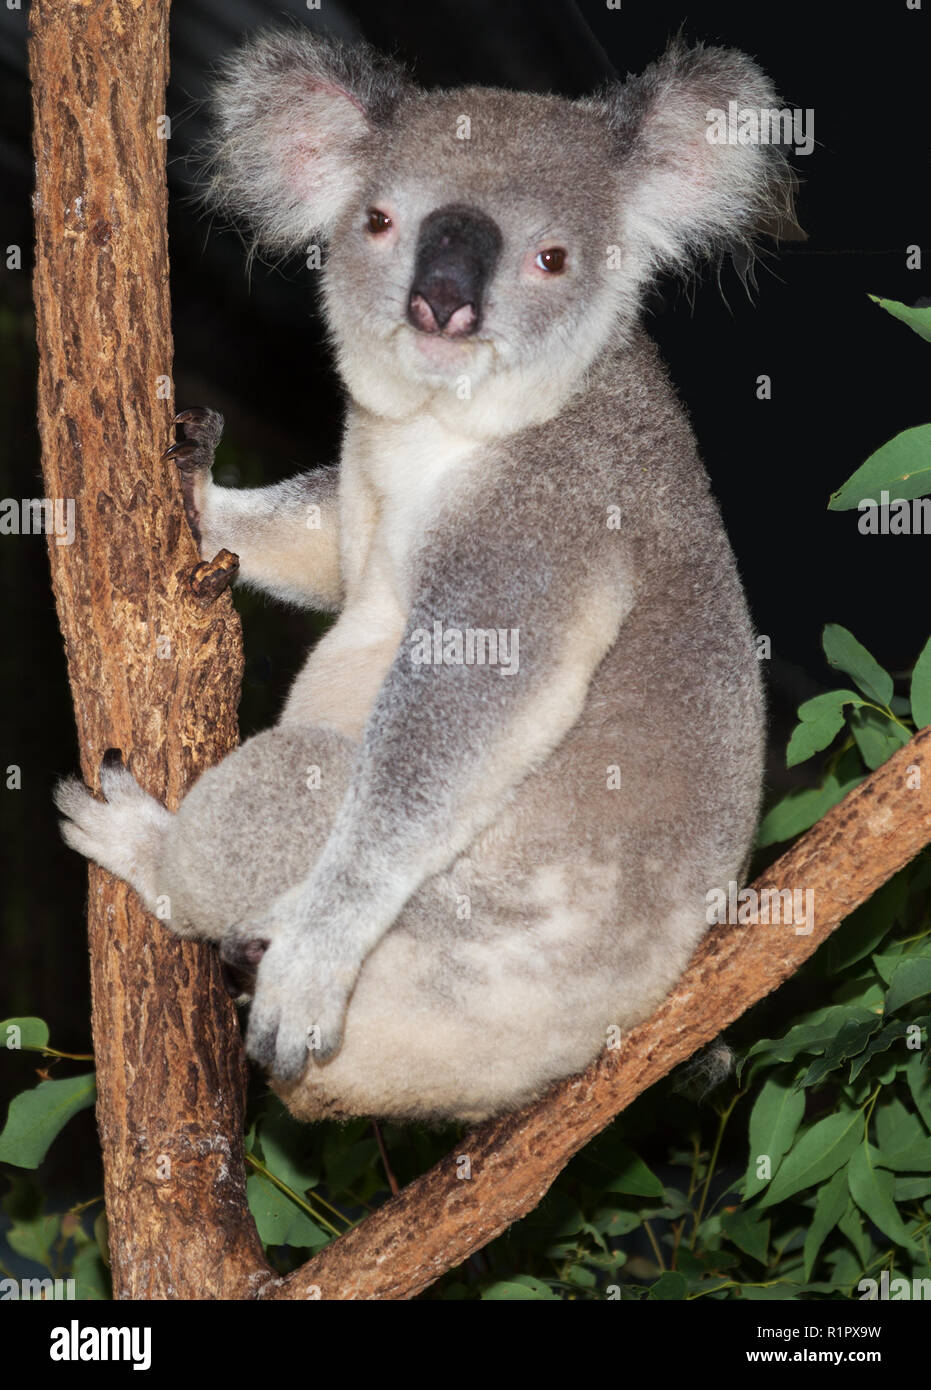 koala bear from Australia Stock Photo